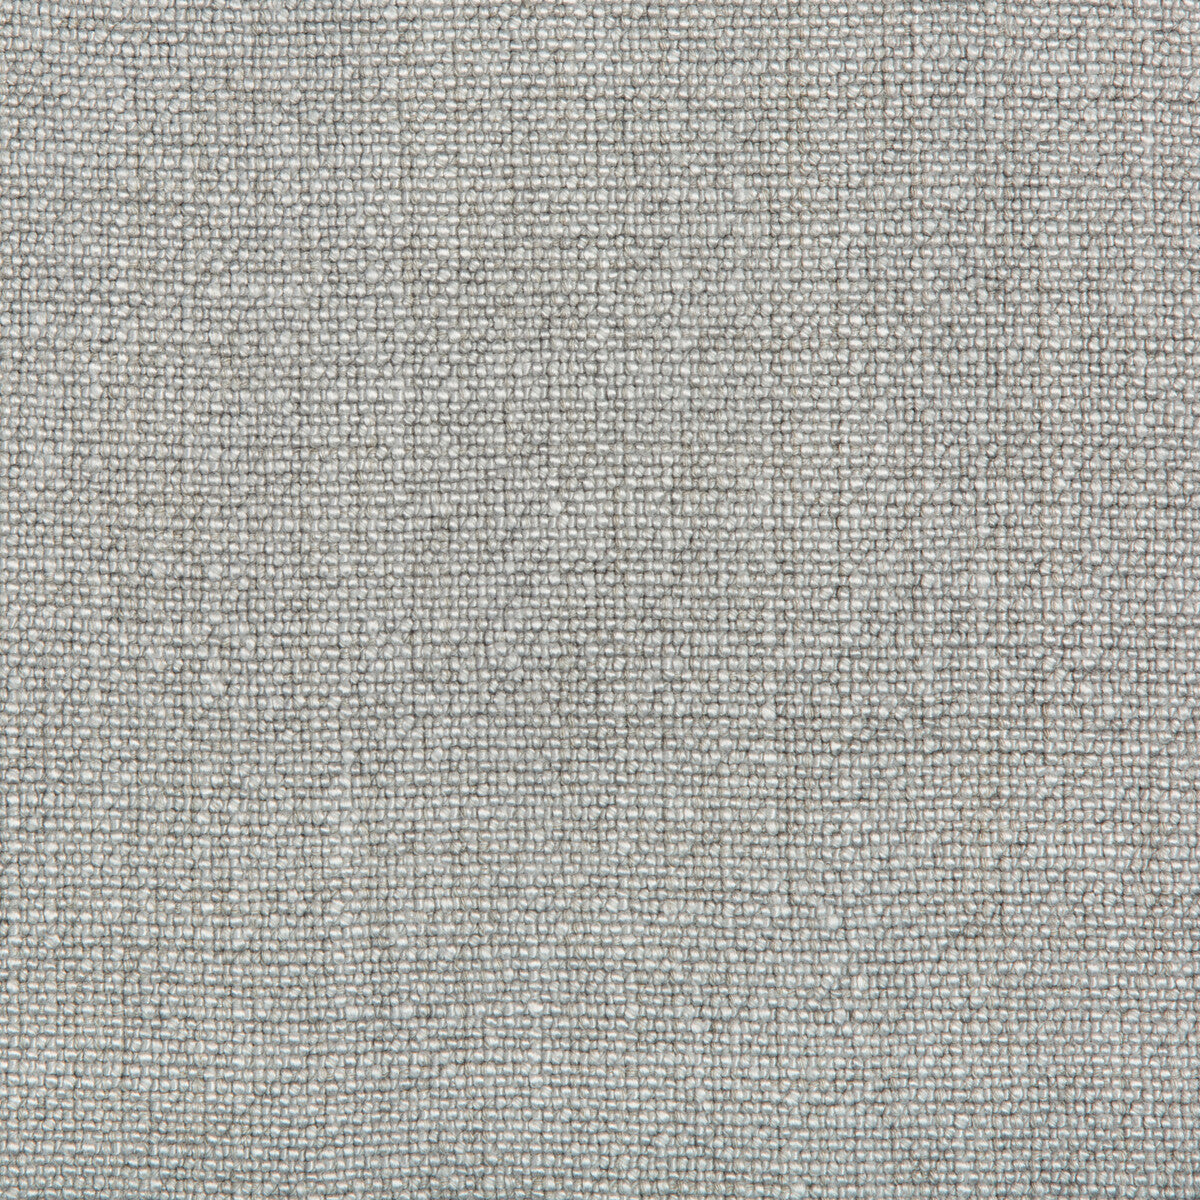 Kravet Basics fabric in 35189-11 color - pattern 35189.11.0 - by Kravet Basics